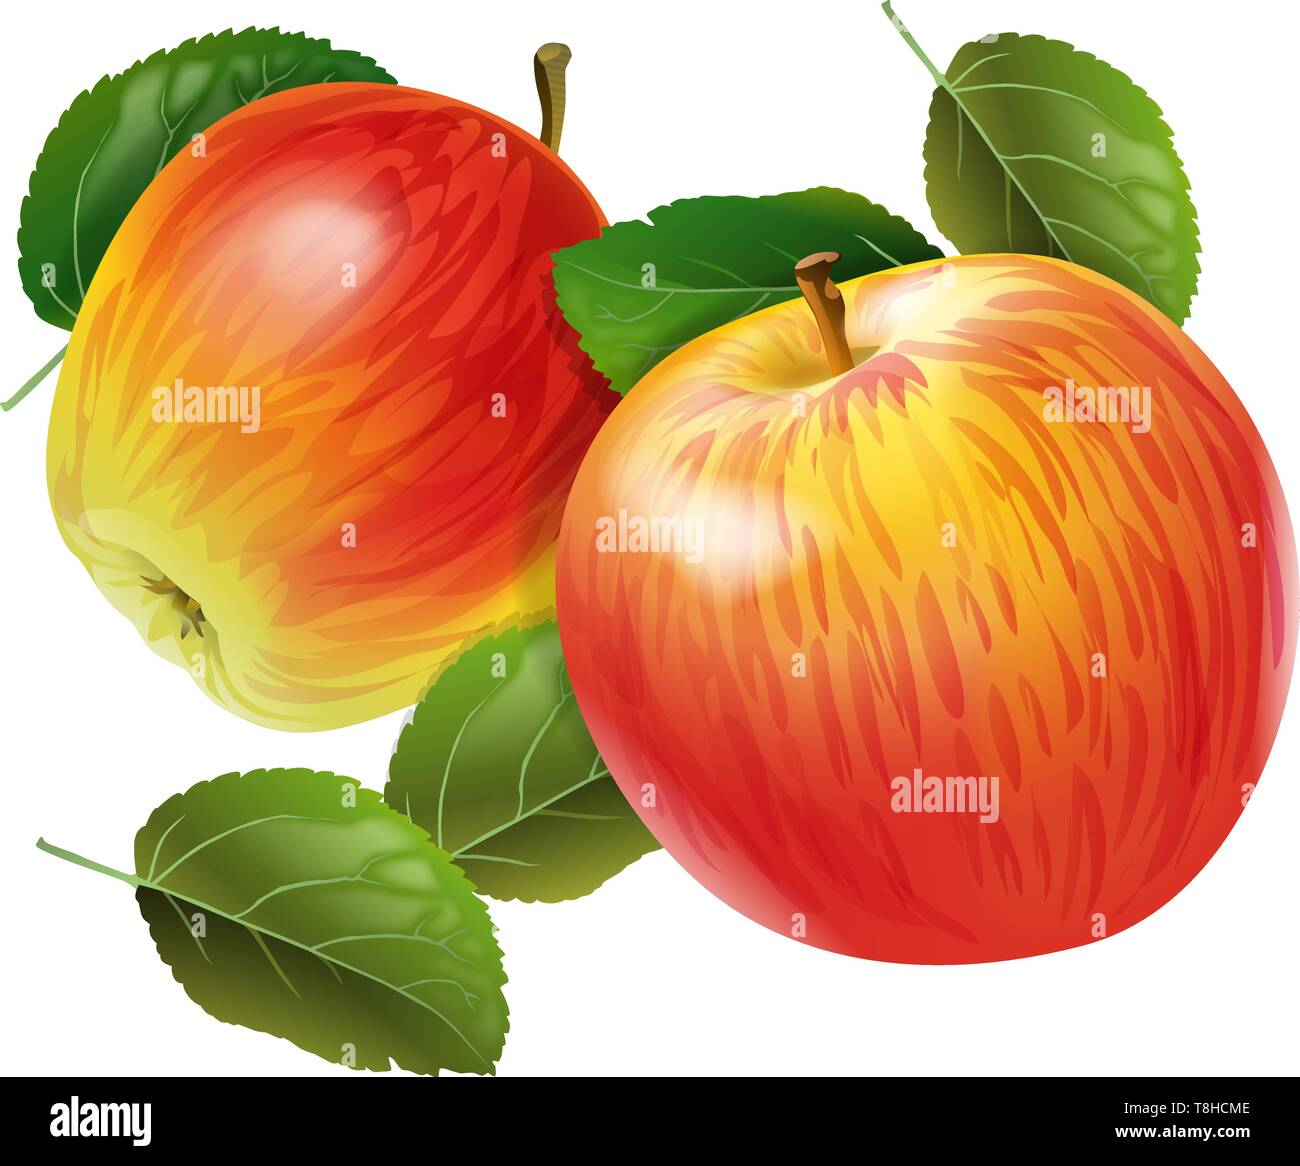 Äpfel. Zwei rote reife Früchte mit grünen Blättern auf weißem Hintergrund. Isoliert. Vektor Stock Vektor